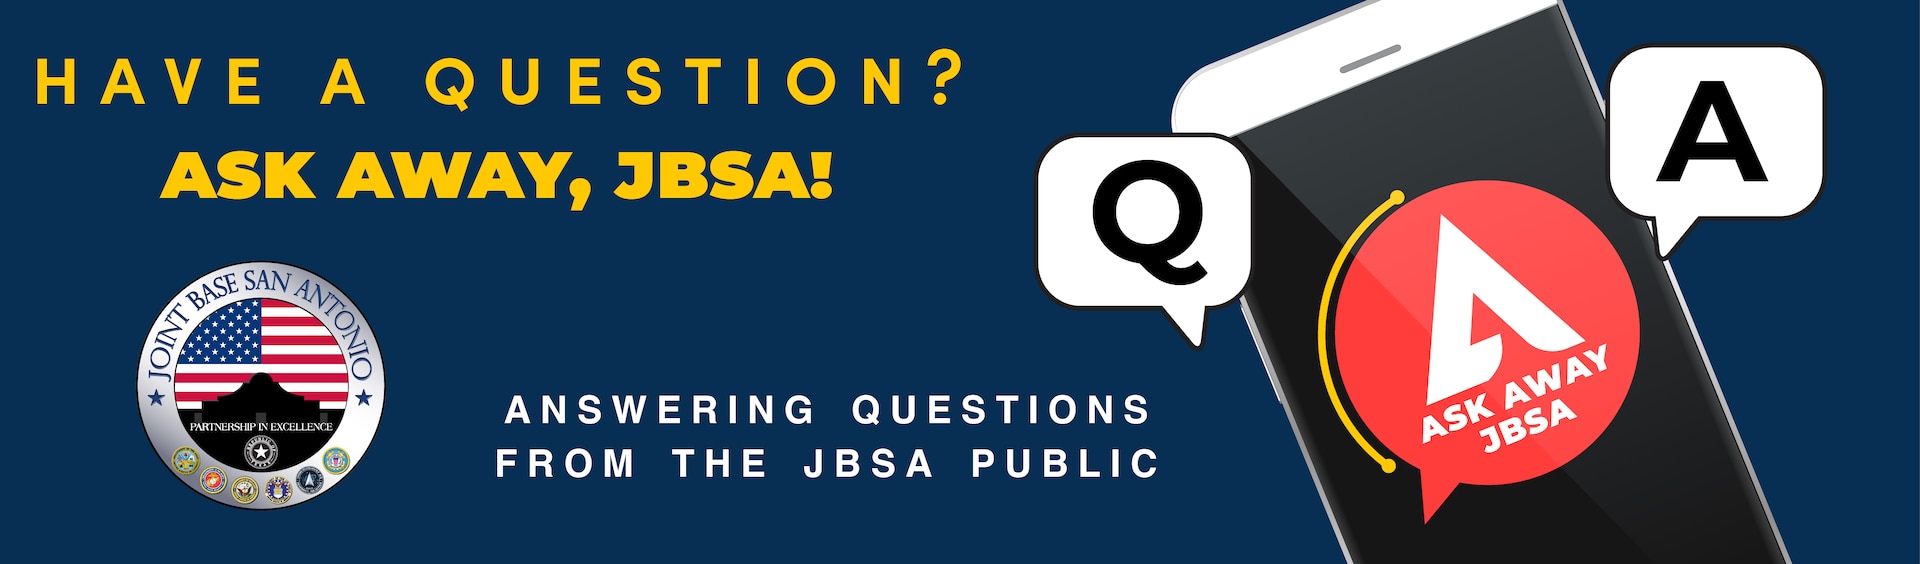 Ask Away JBSA